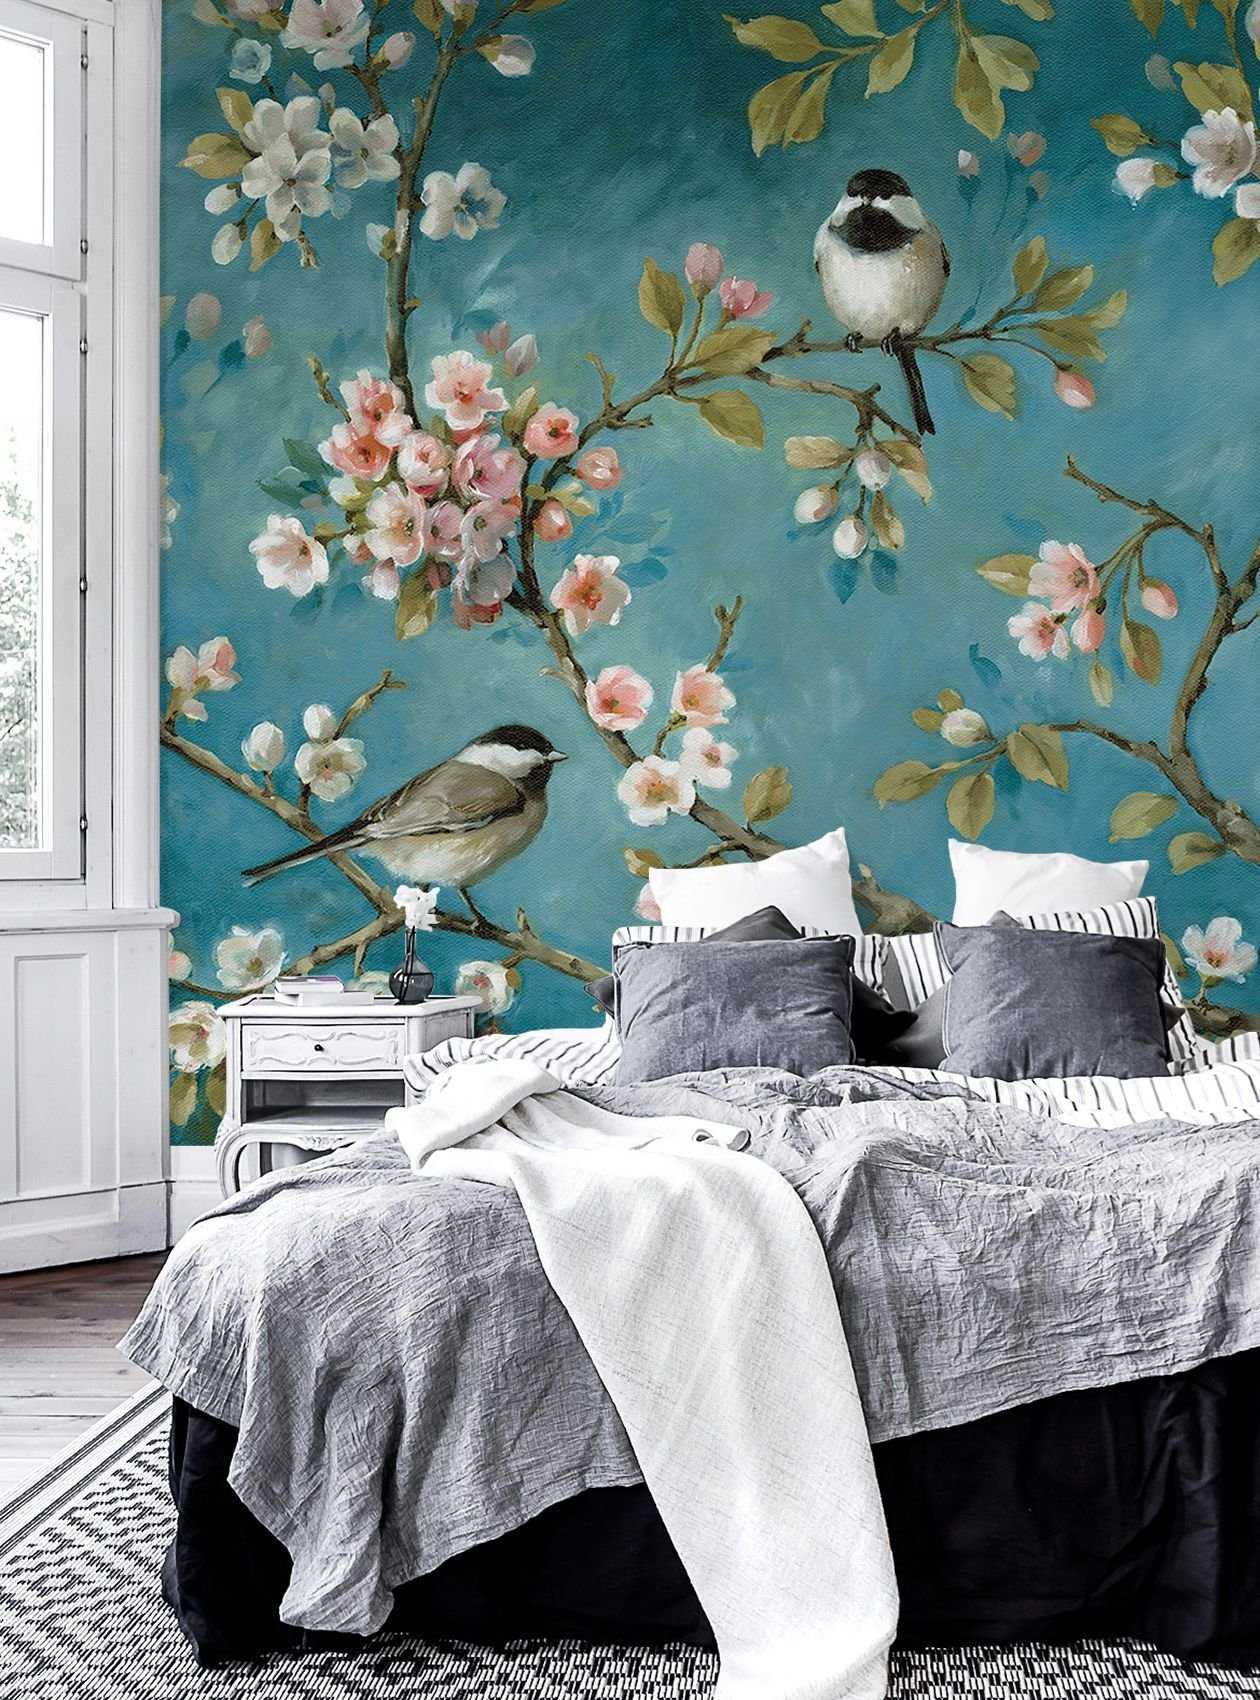 Обои с птицами для стен: где применяются в интерьере квартиры крупные рисунки или мелкие принты, с чем можно сочетать и какой стиль лучше подобрать для обоев с райскими птичками